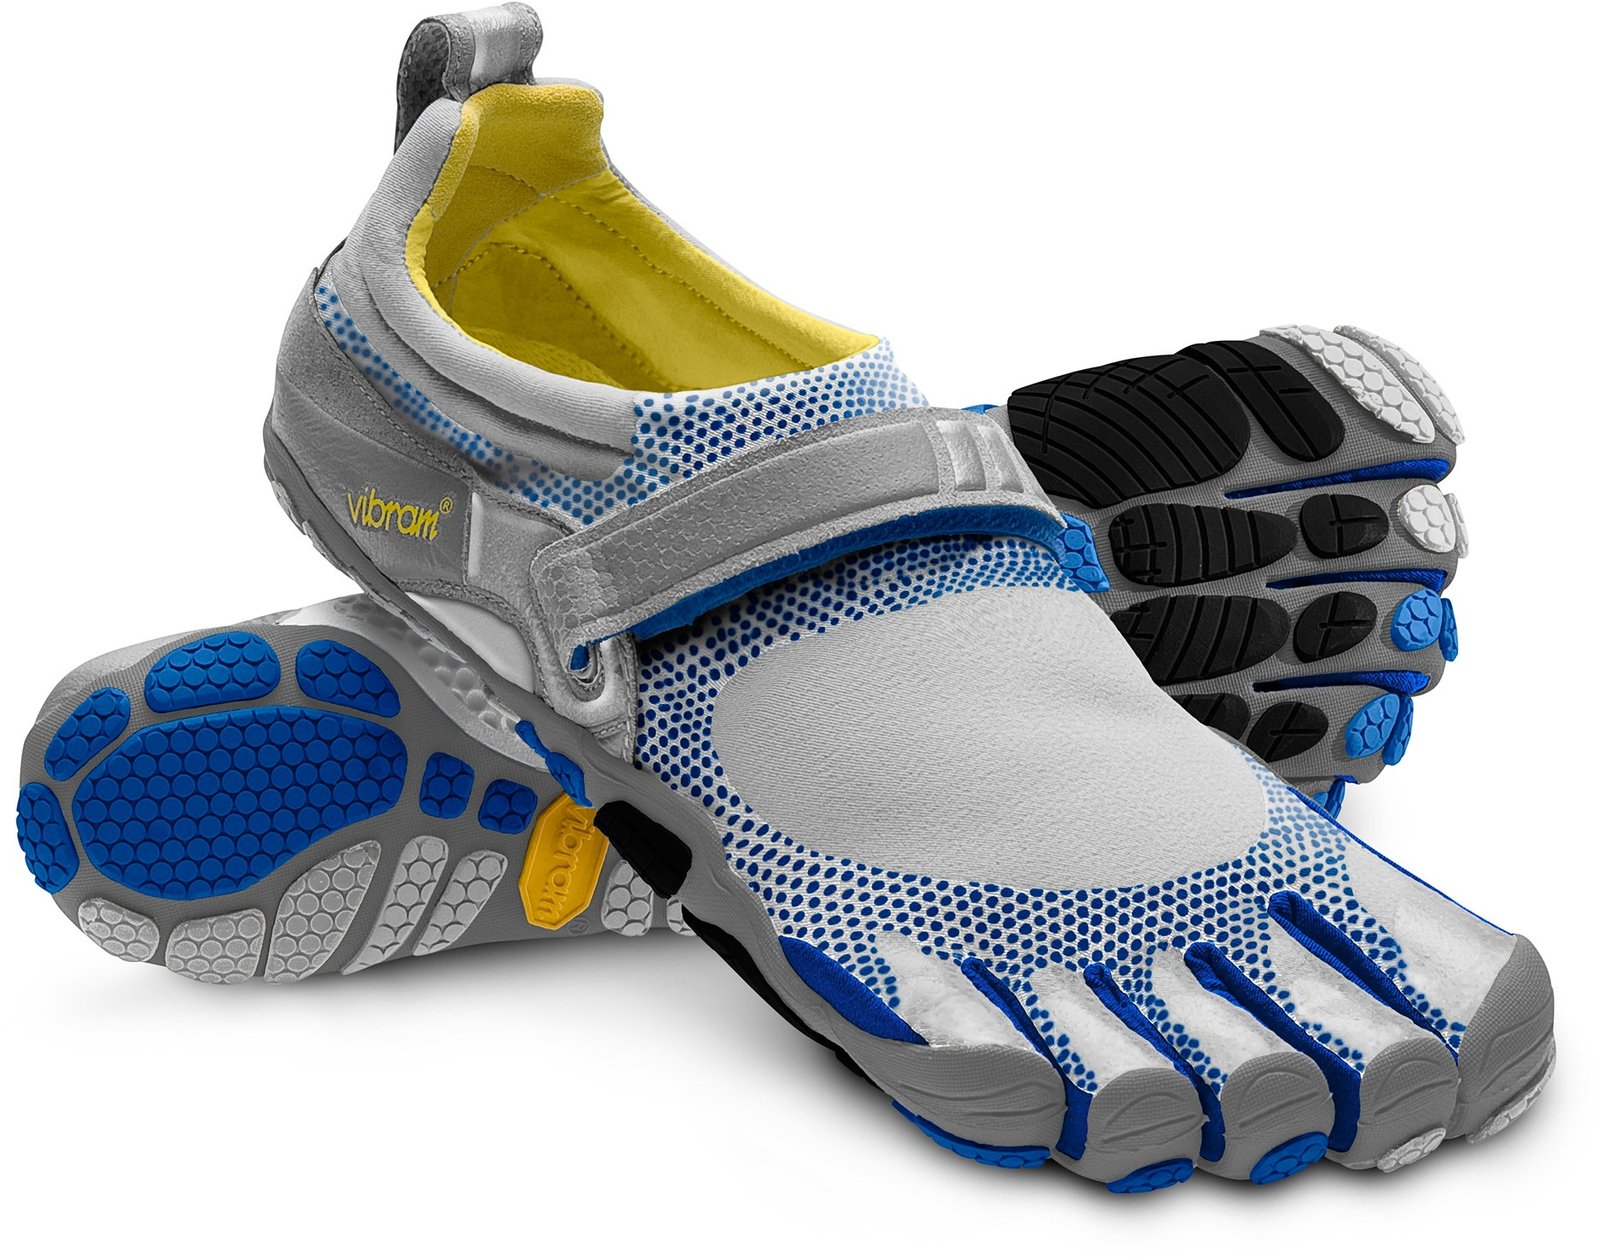 Athletic Footwear  Elio's Foot Comfort Centre 9 Pine Street N Thorold